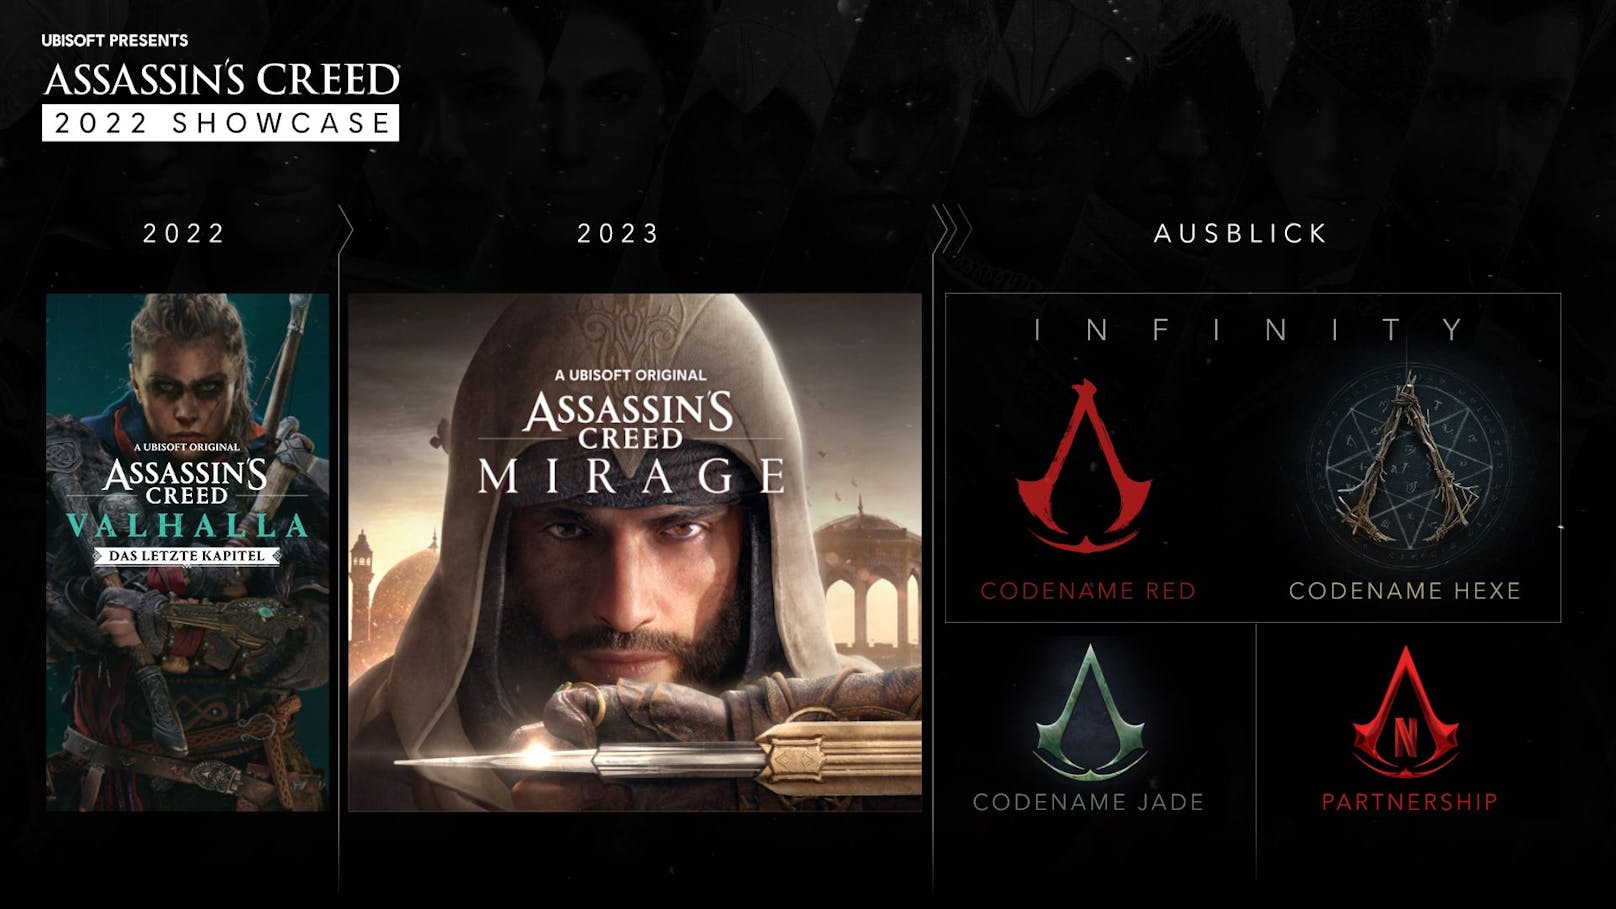 Ubisoft enthüllt gleich vier neue "Assassin's"-Games: "Mirage", "Codename Red", "Codename Jade" und "Codename Hexe".